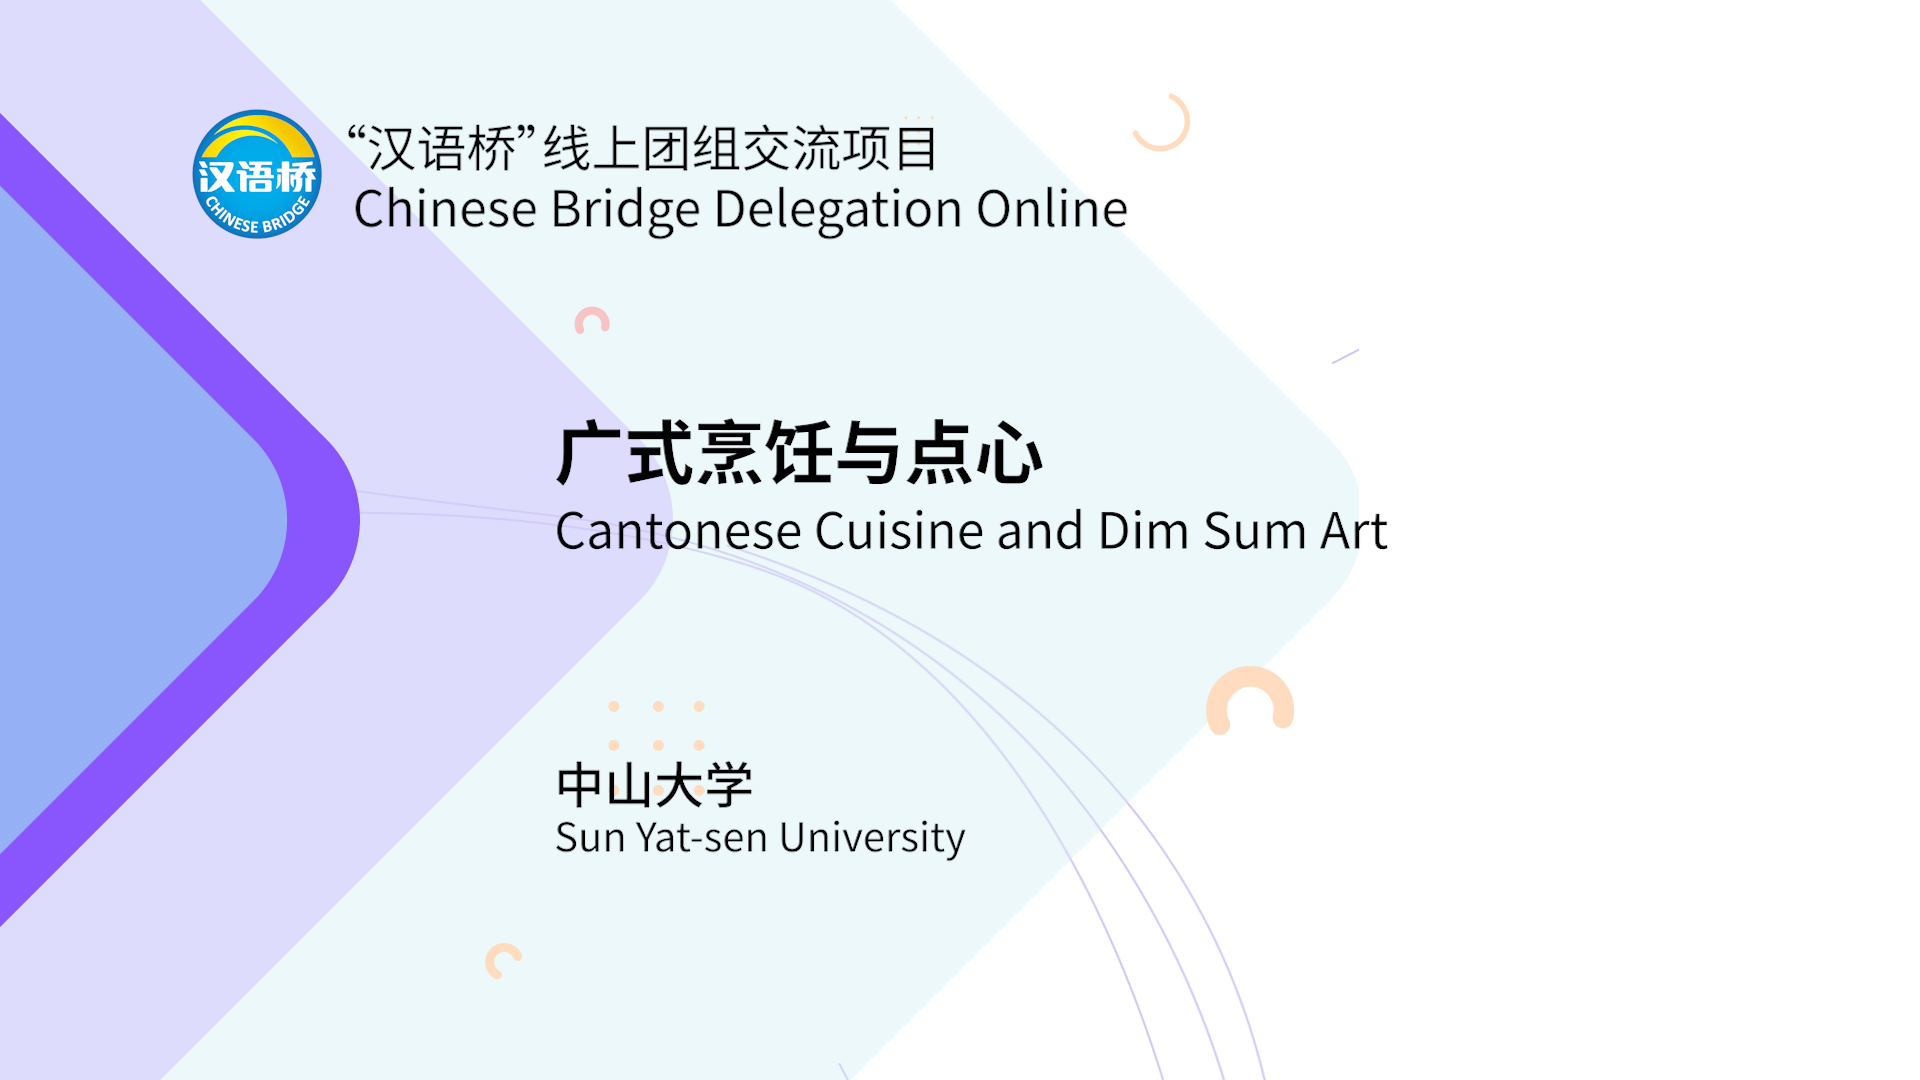 Cantonese Cuisine and Dim Sum Art